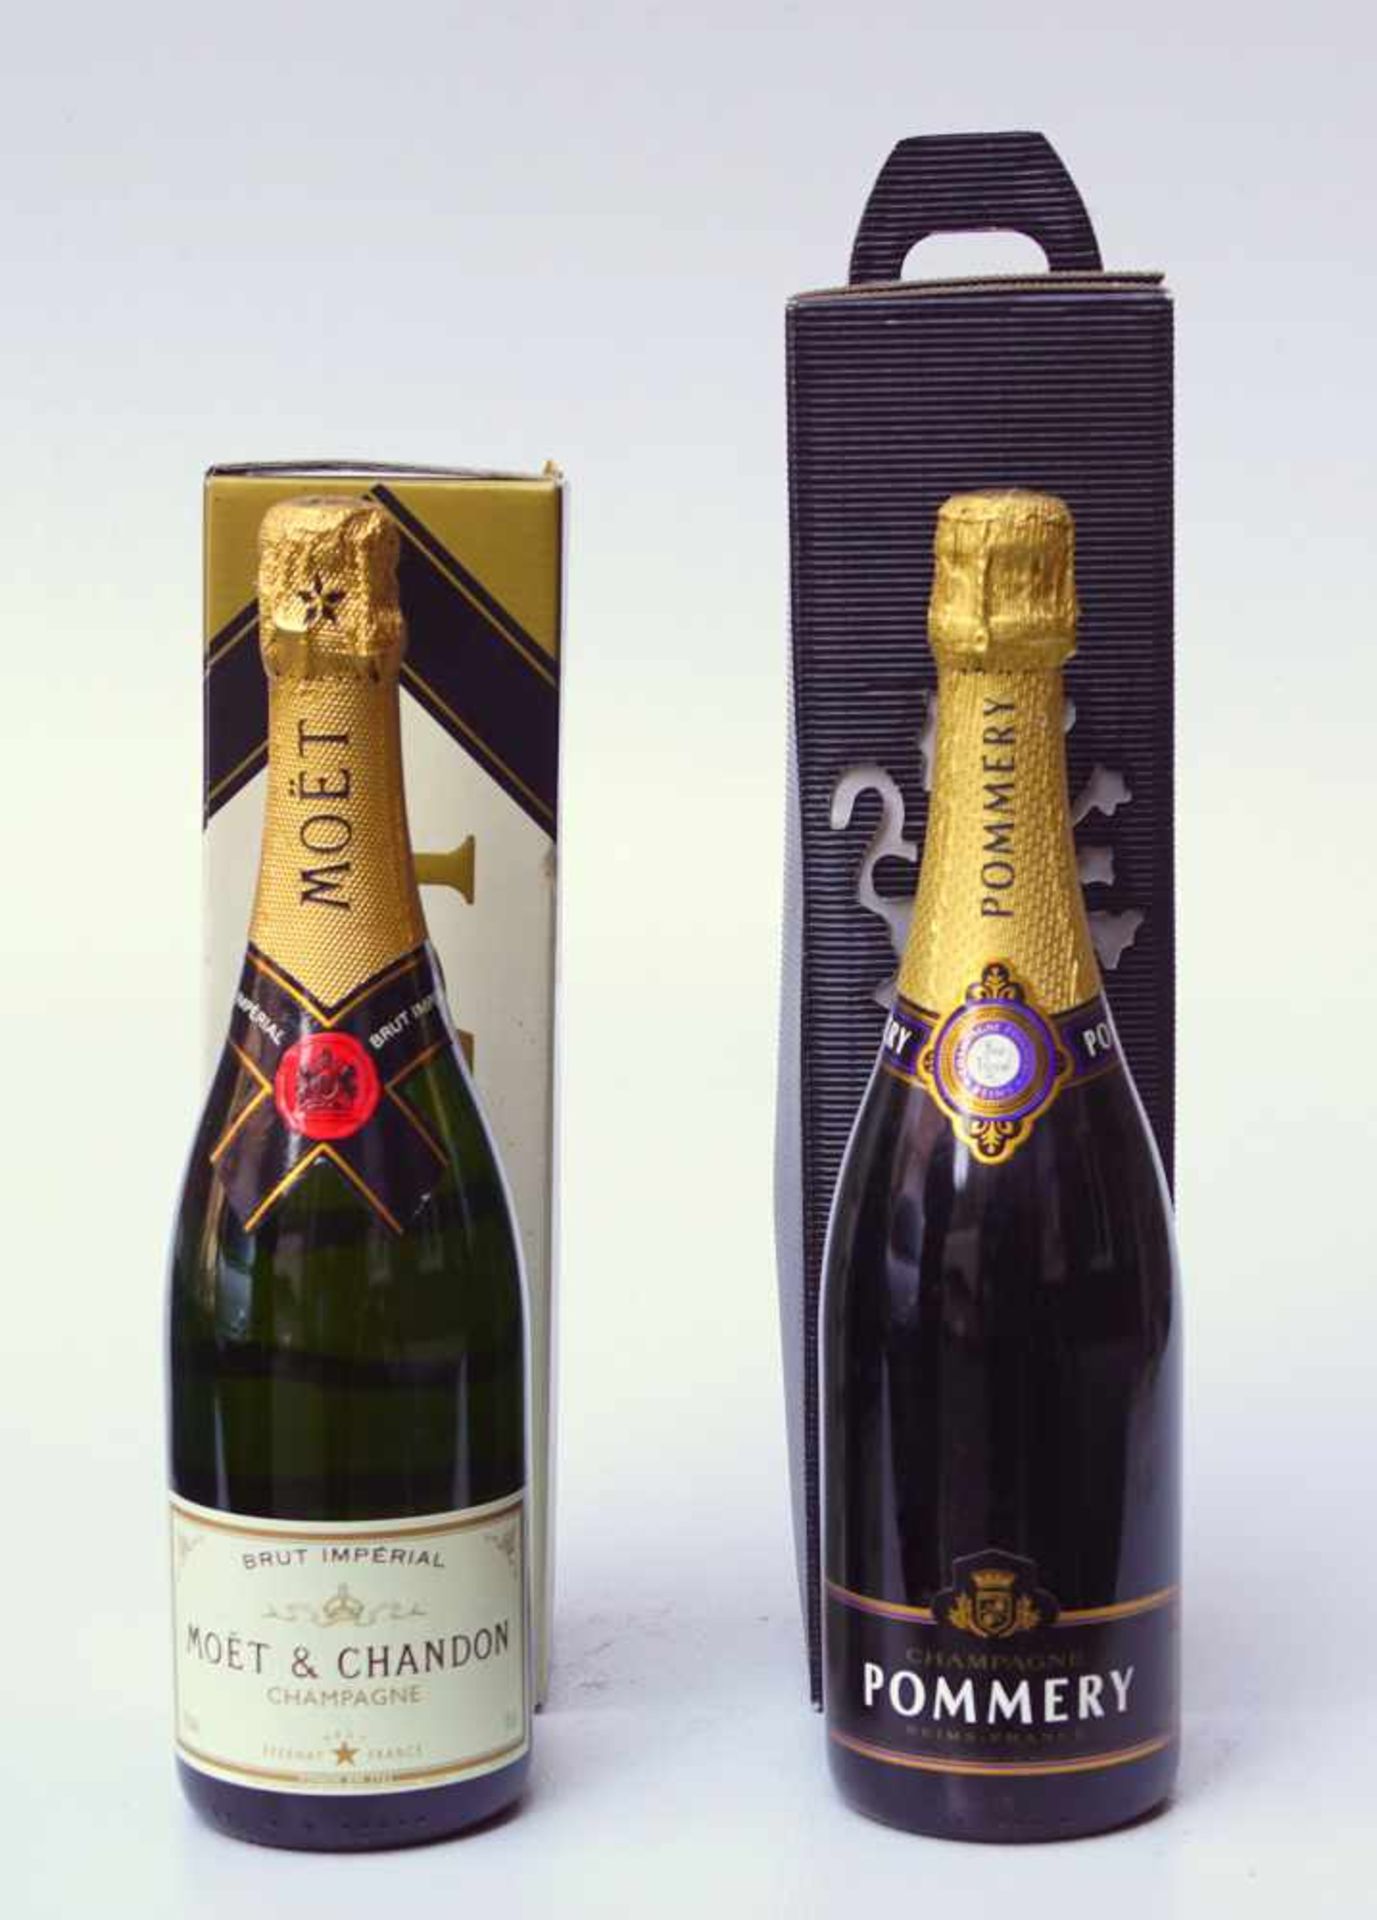 2 Flaschen Champagner, Pommery, Moet ChandonJeweils in der orig. Box, perfekte Füllstande, jeweils